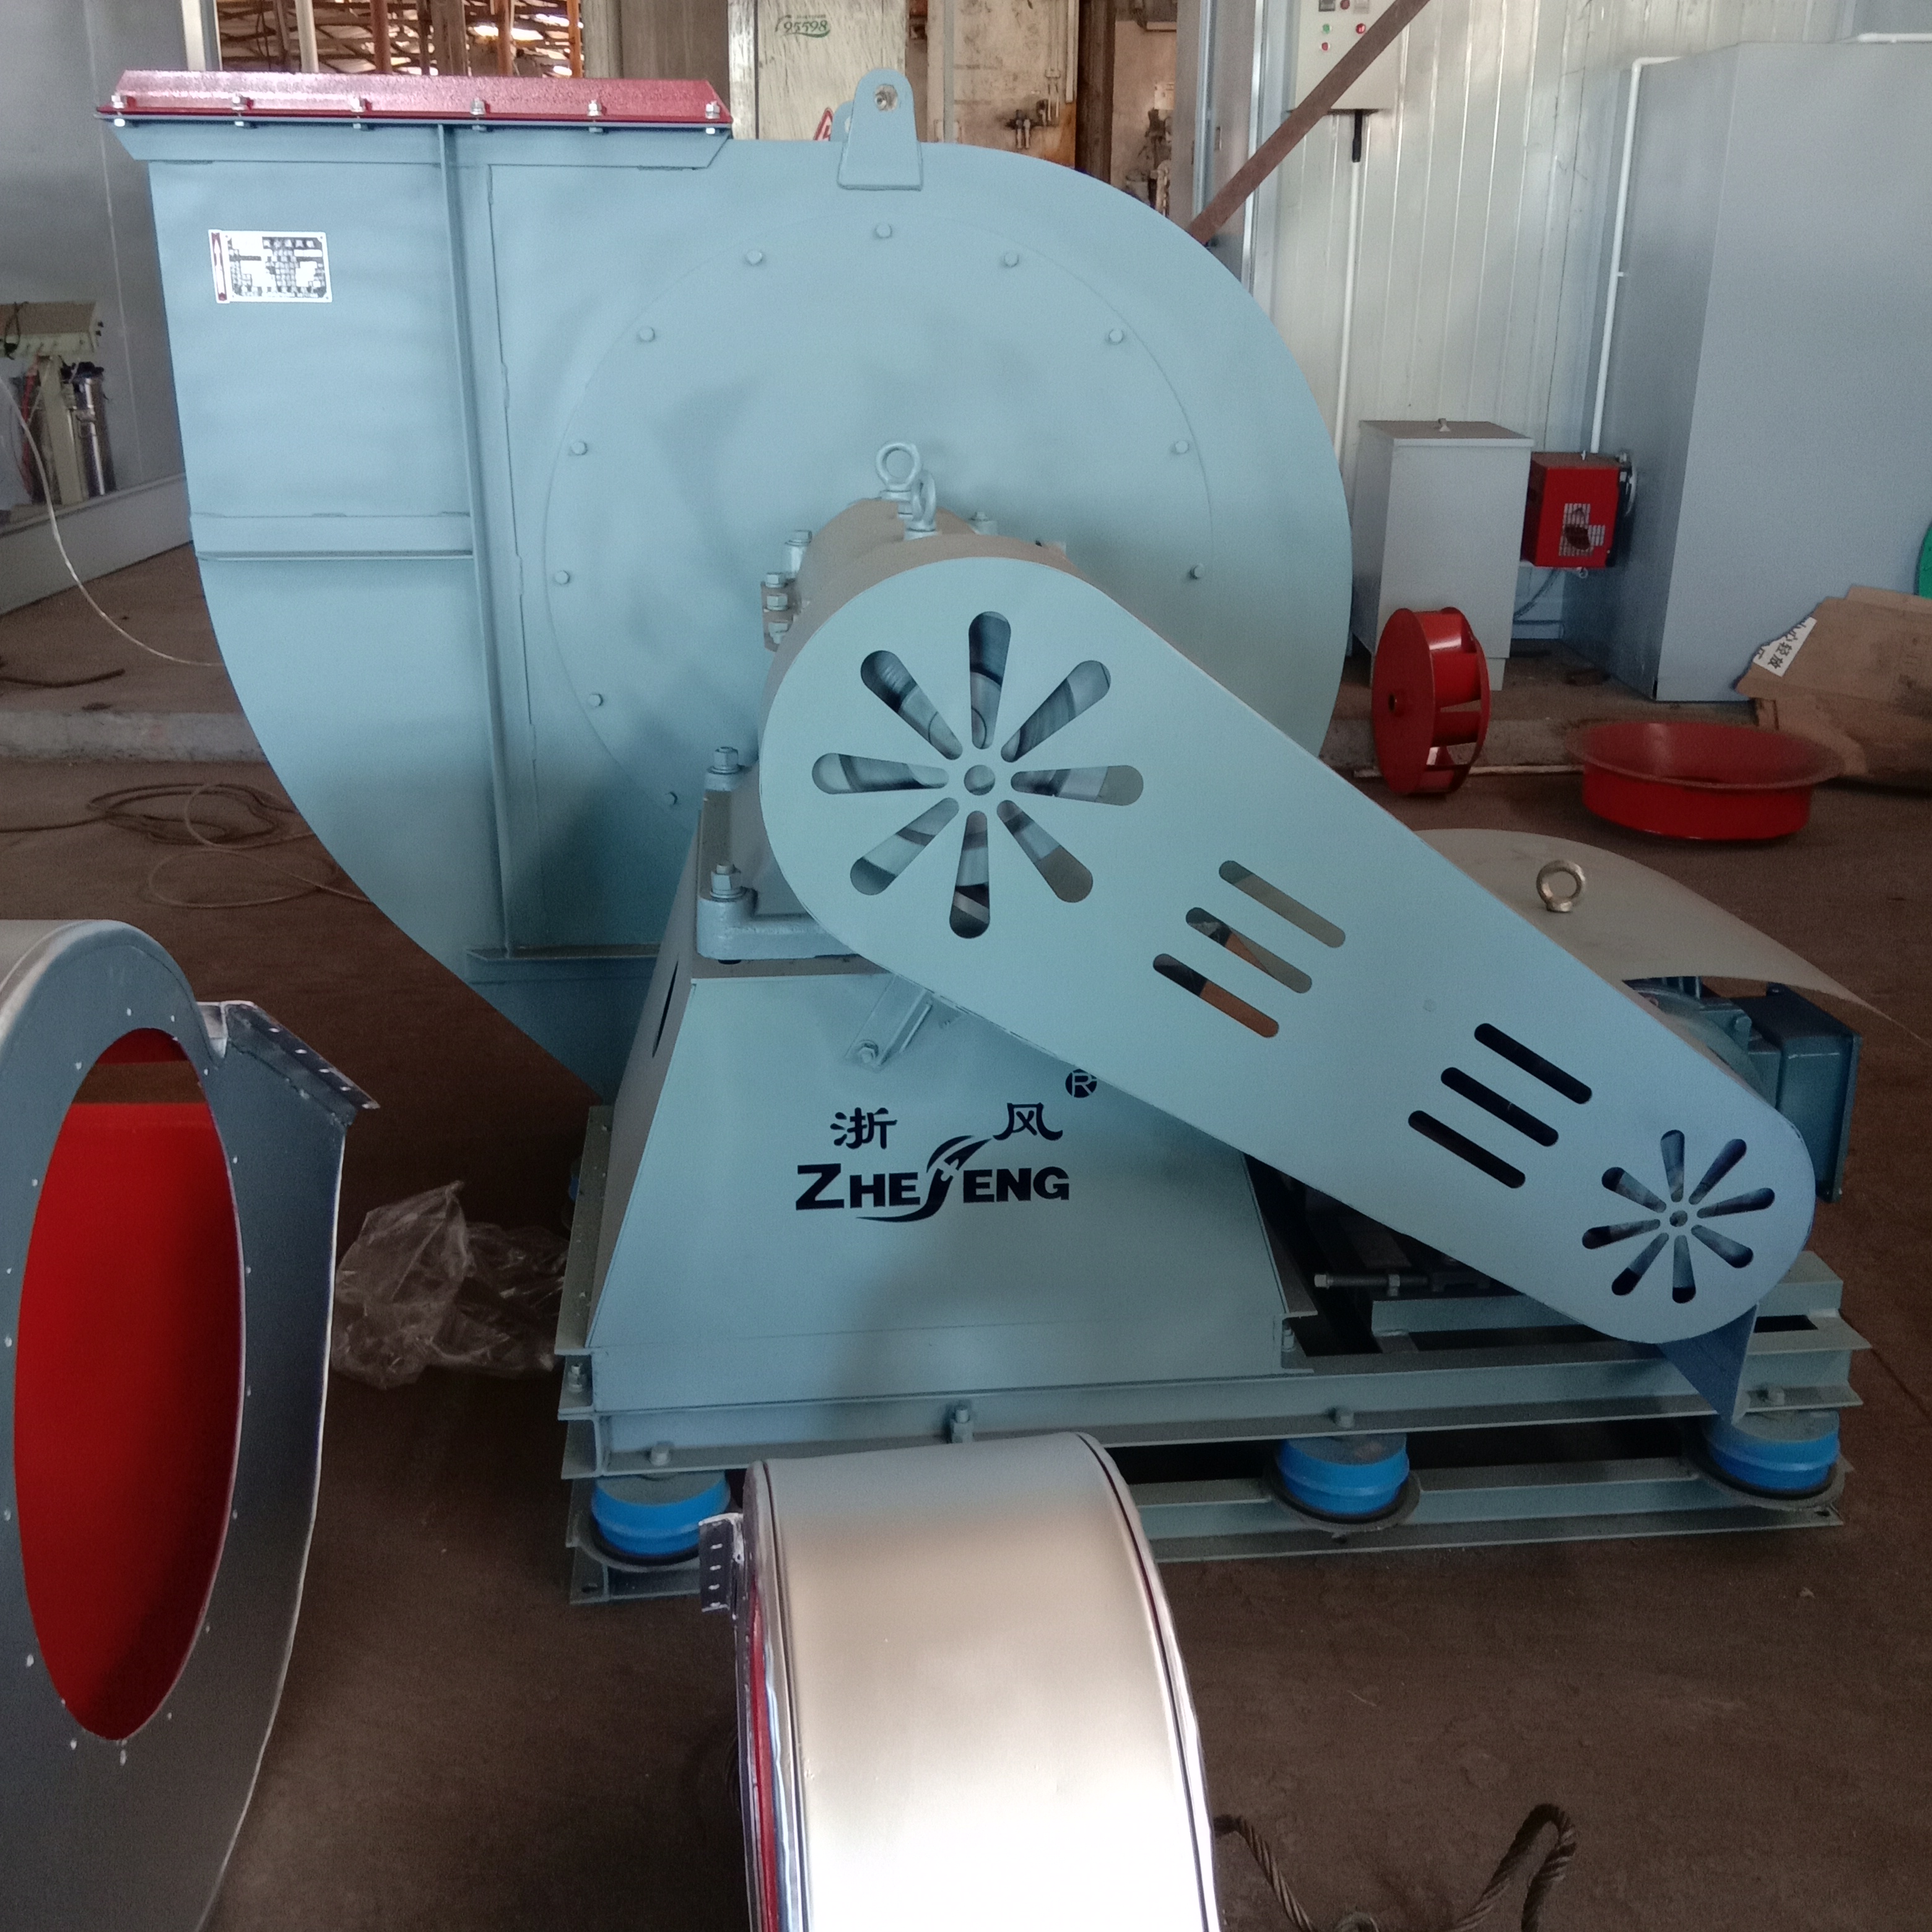 centrifugális ventilátor fúvó fűrészpor levegő elszívás 4-68 Környezetvédelmi poreltávolító berendezés